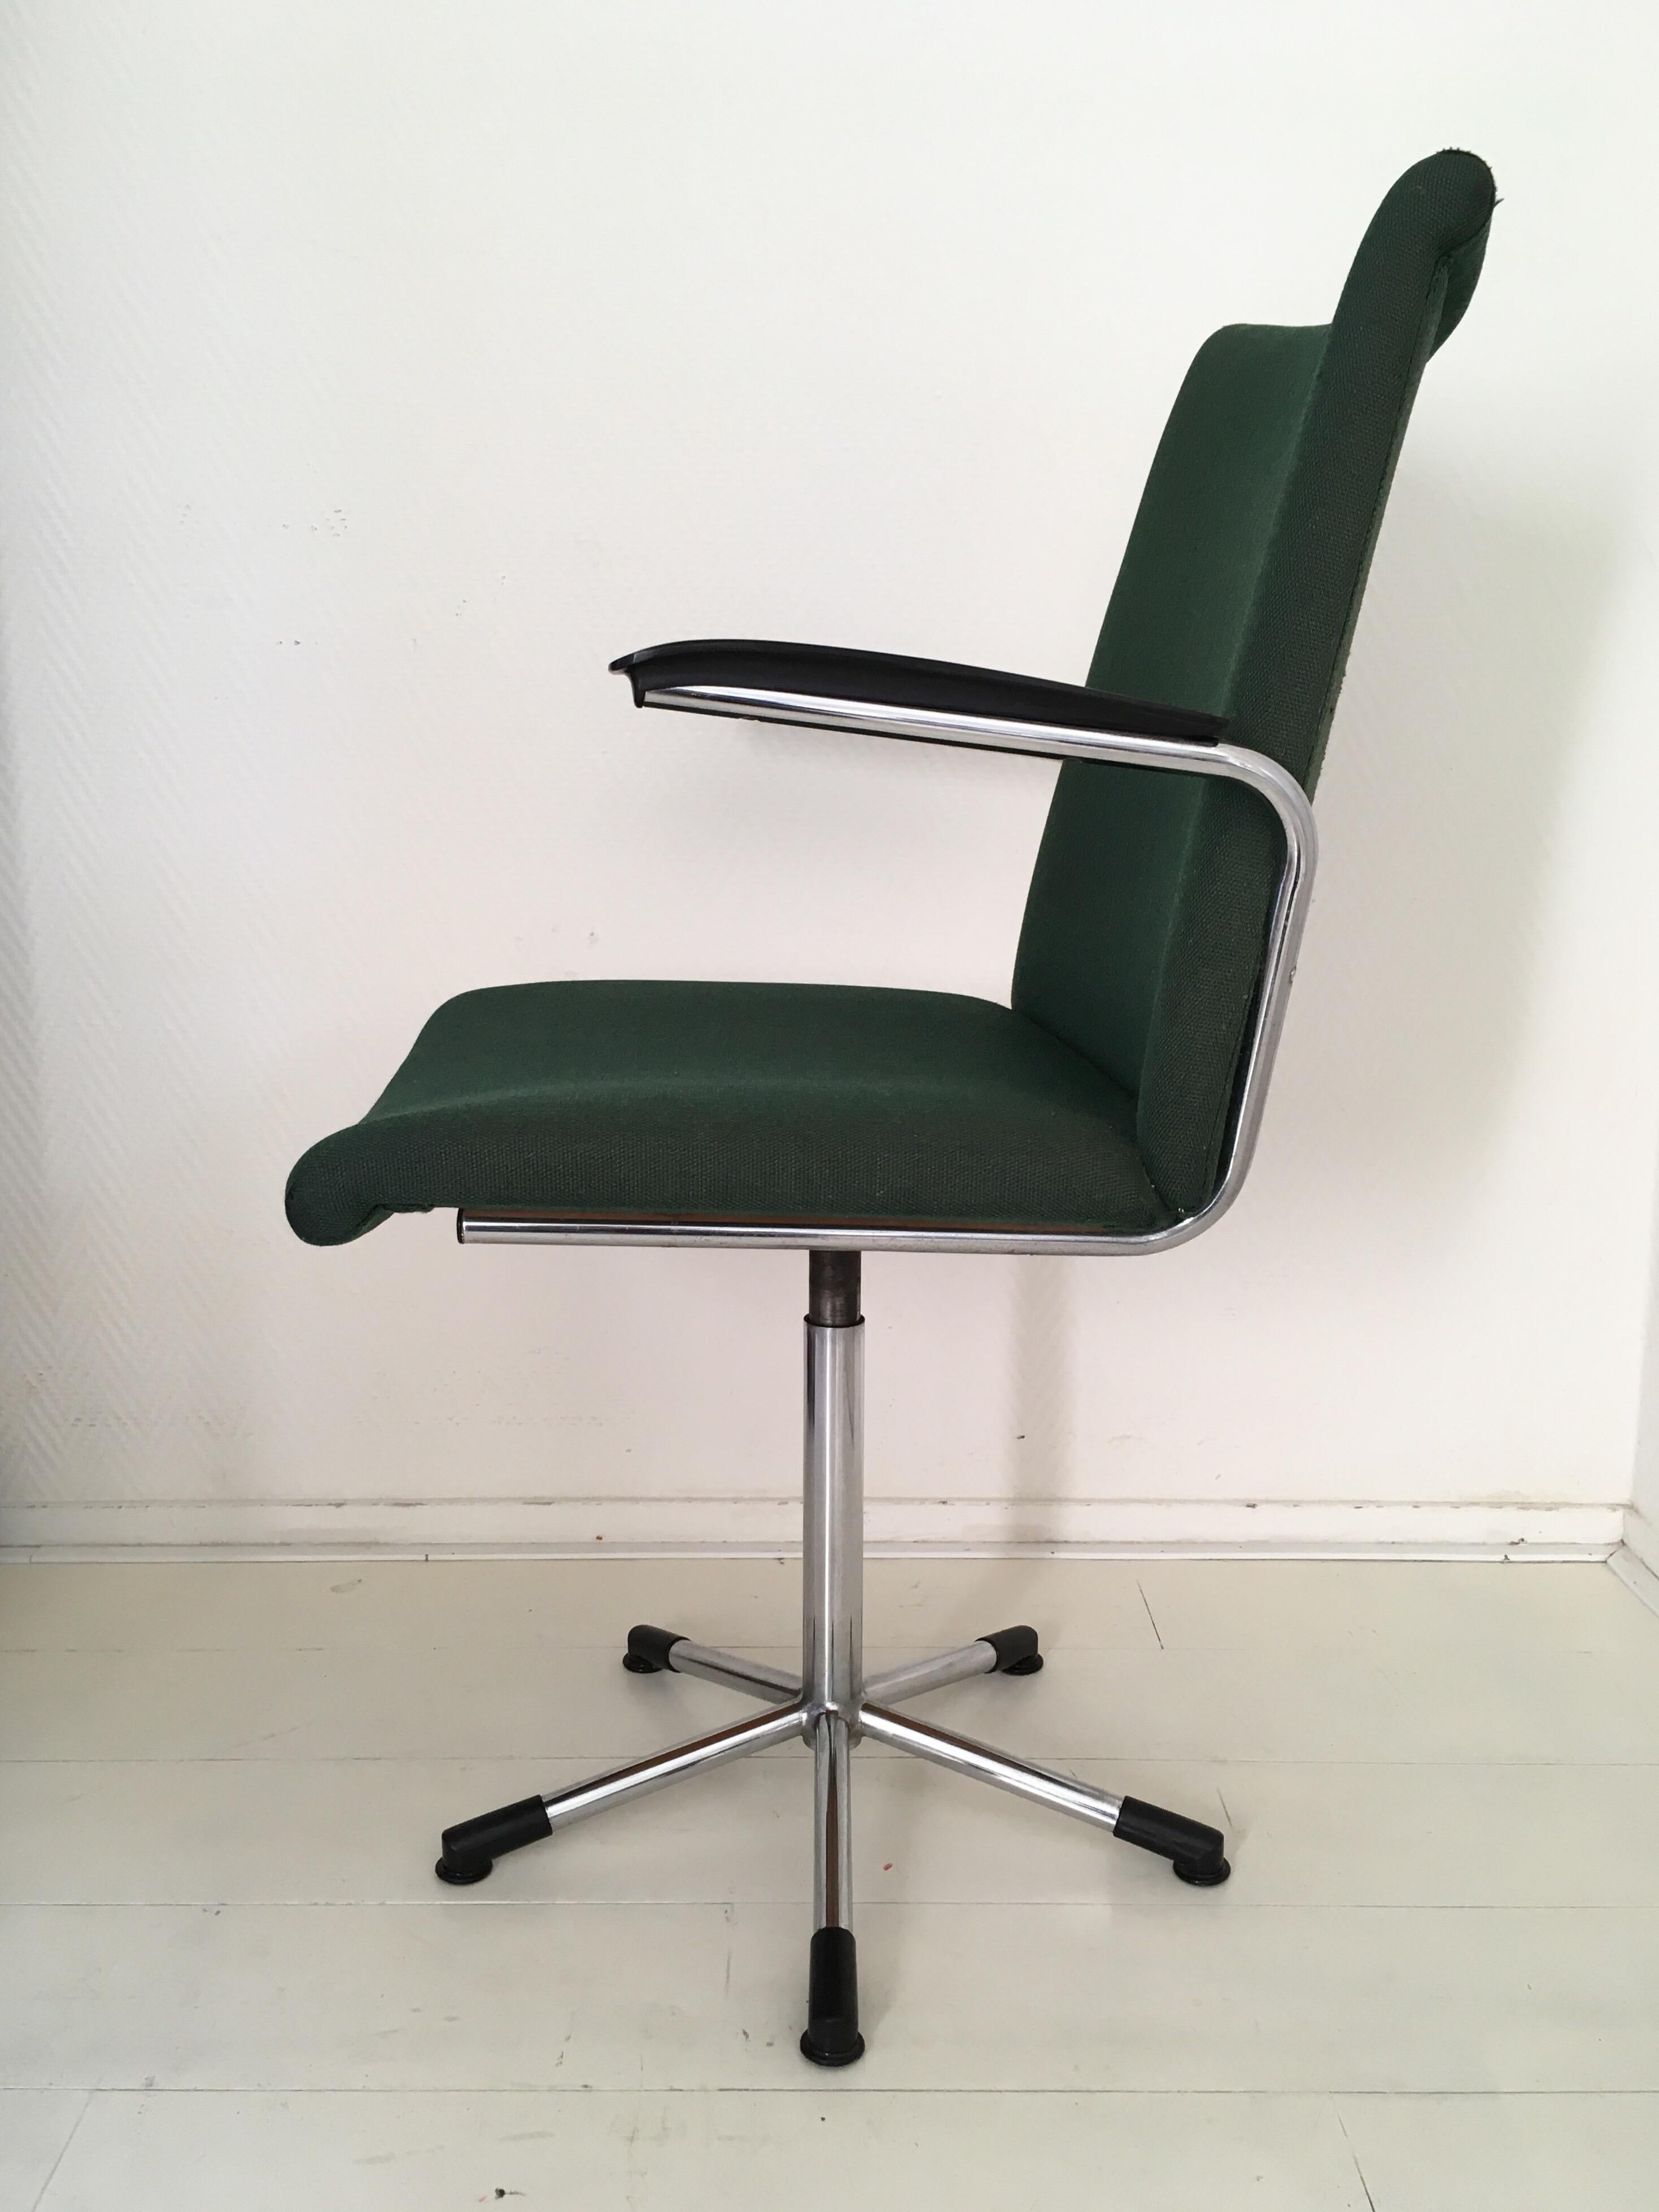 Cette chaise de bureau minimaliste (modèle 3314), recouverte d'un revêtement vert mousse, est dotée d'une base chromée avec un pied en étoile et des accoudoirs en bakélite. La chaise reste en très bon état et présente des signes minimes d'âge et